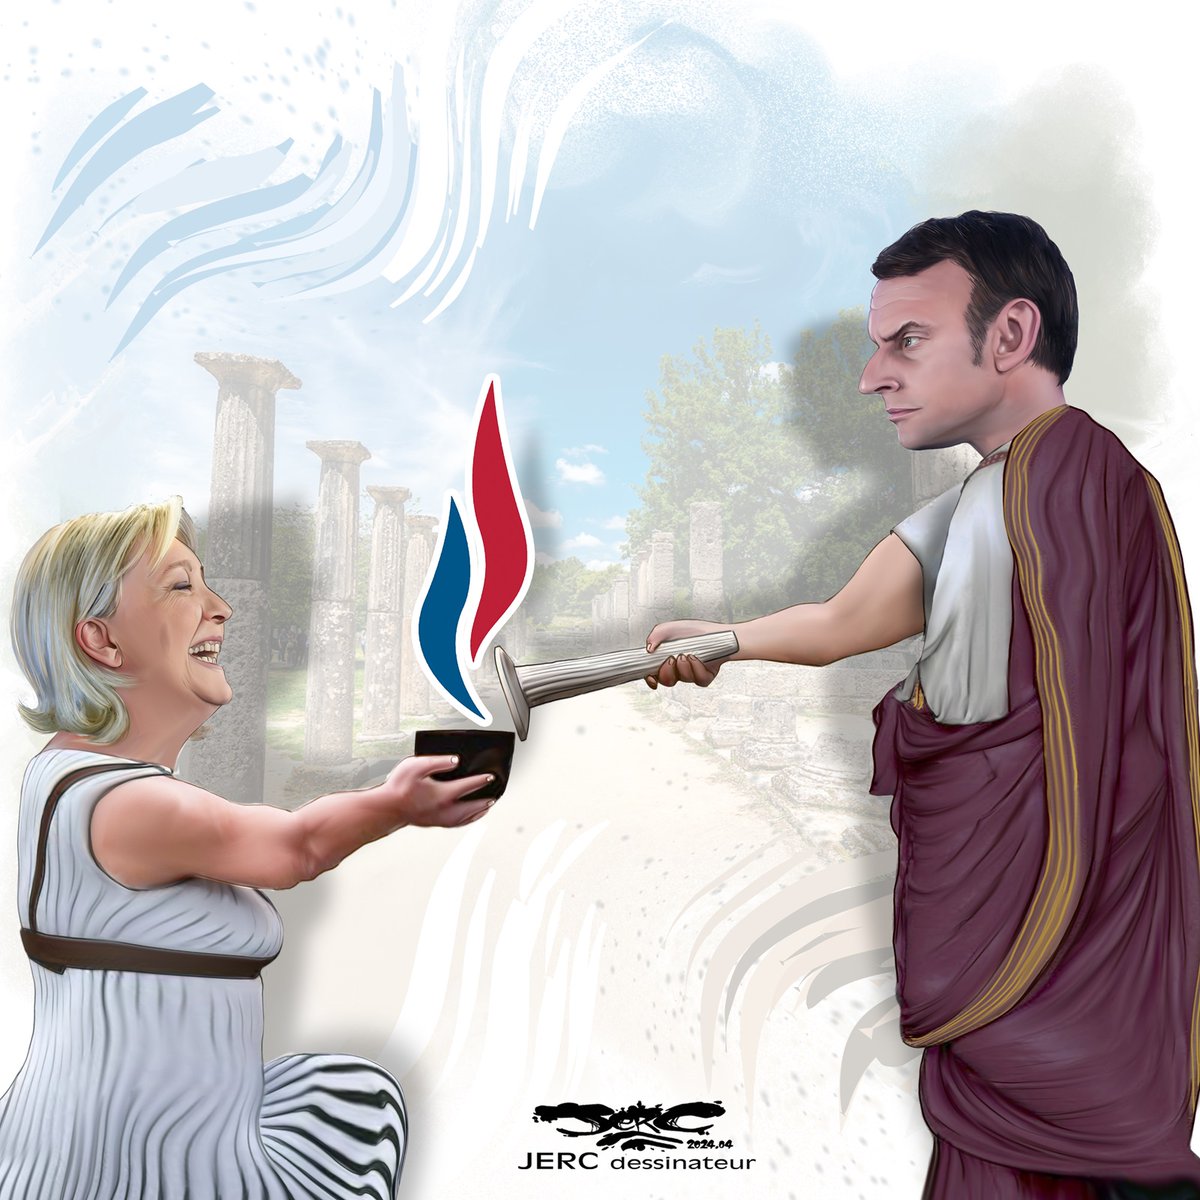 Le #DessinDePresse de Jerc : Embrasement
Retrouvez tous les dessins de Jerc sur : blagues-et-dessins.com
#DessinDeJerc #ActuDeJerc #Jerc #Humour #Macron #EmmanuelMacron #Paris2024 #JeuxOlympiques #LePen #MarineLePen #FlammeOlympique